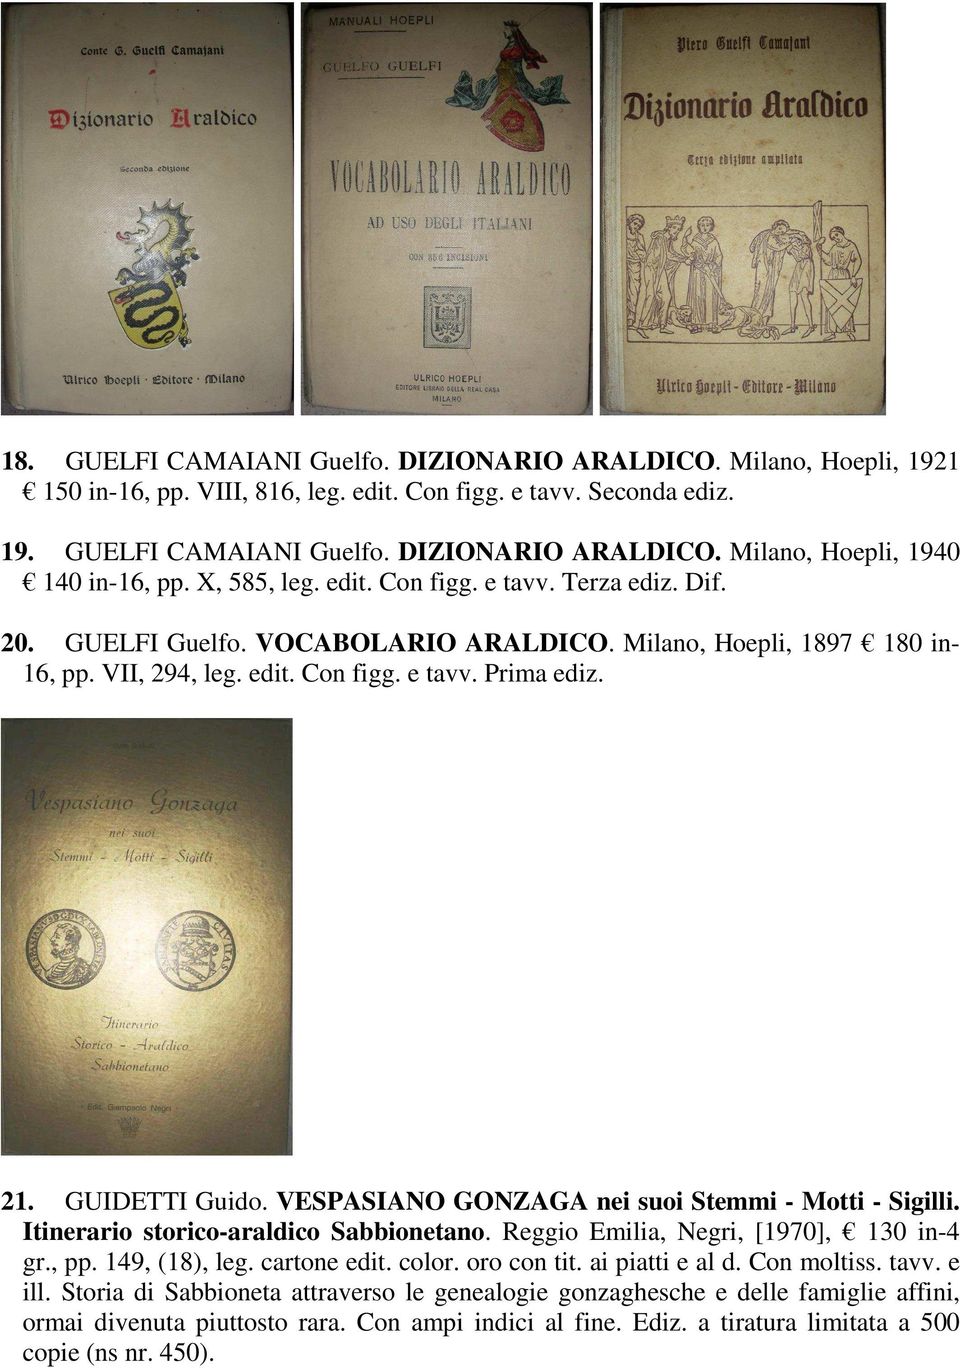 GUIDETTI Guido. VESPASIANO GONZAGA nei suoi Stemmi - Motti - Sigilli. Itinerario storico-araldico Sabbionetano. Reggio Emilia, Negri, [1970], 130 in-4 gr., pp. 149, (18), leg. cartone edit. color.